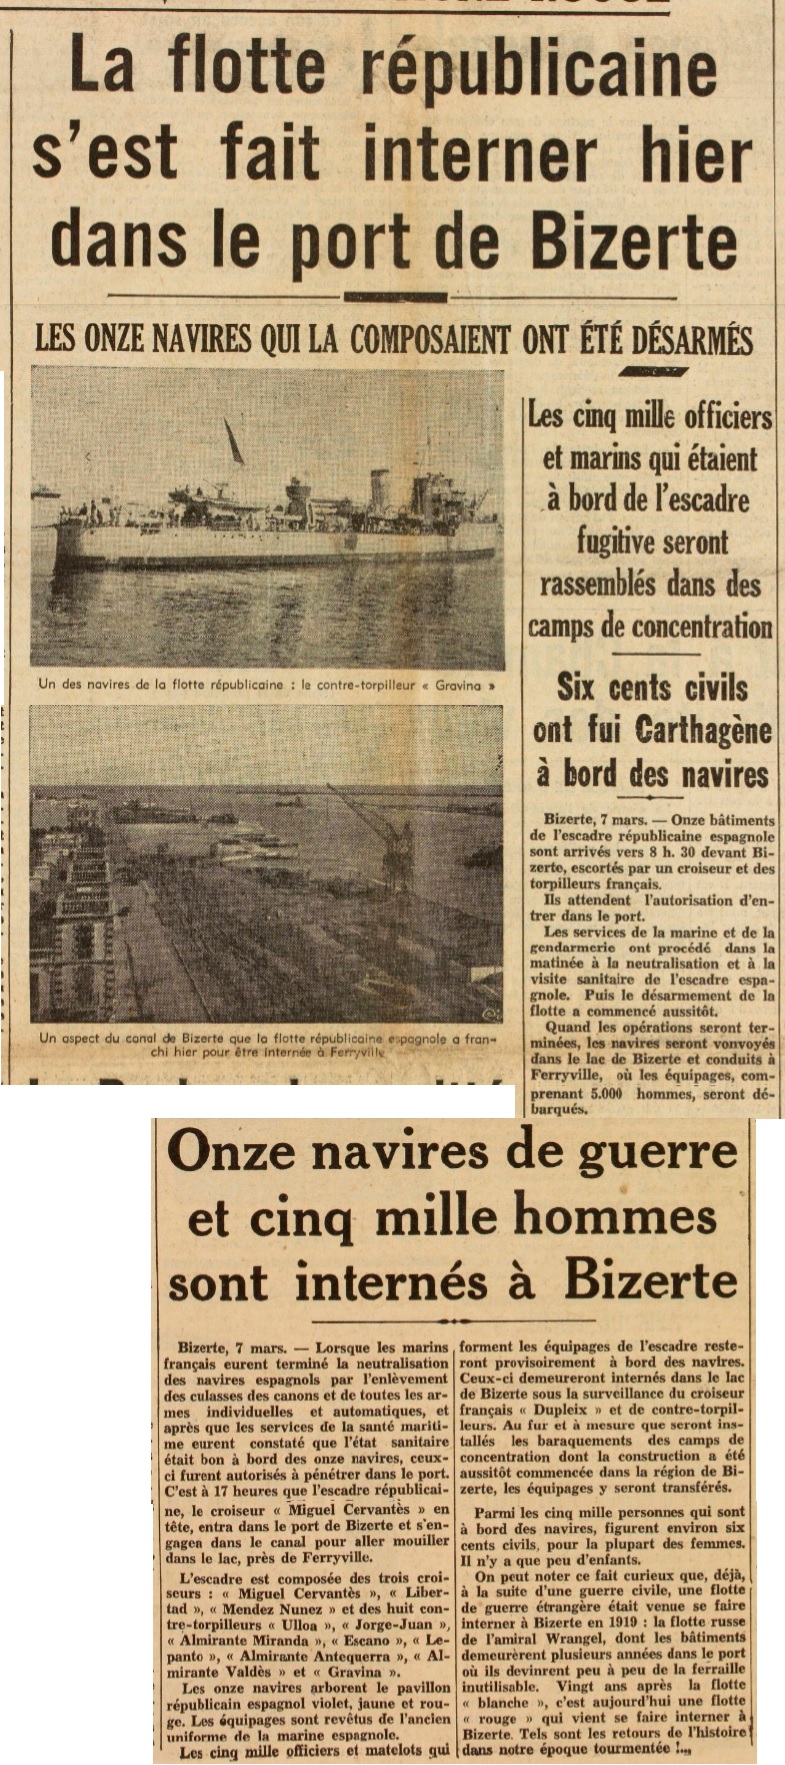 Reddition de la flotte républicaine espagnole à Bizerte Espagn11